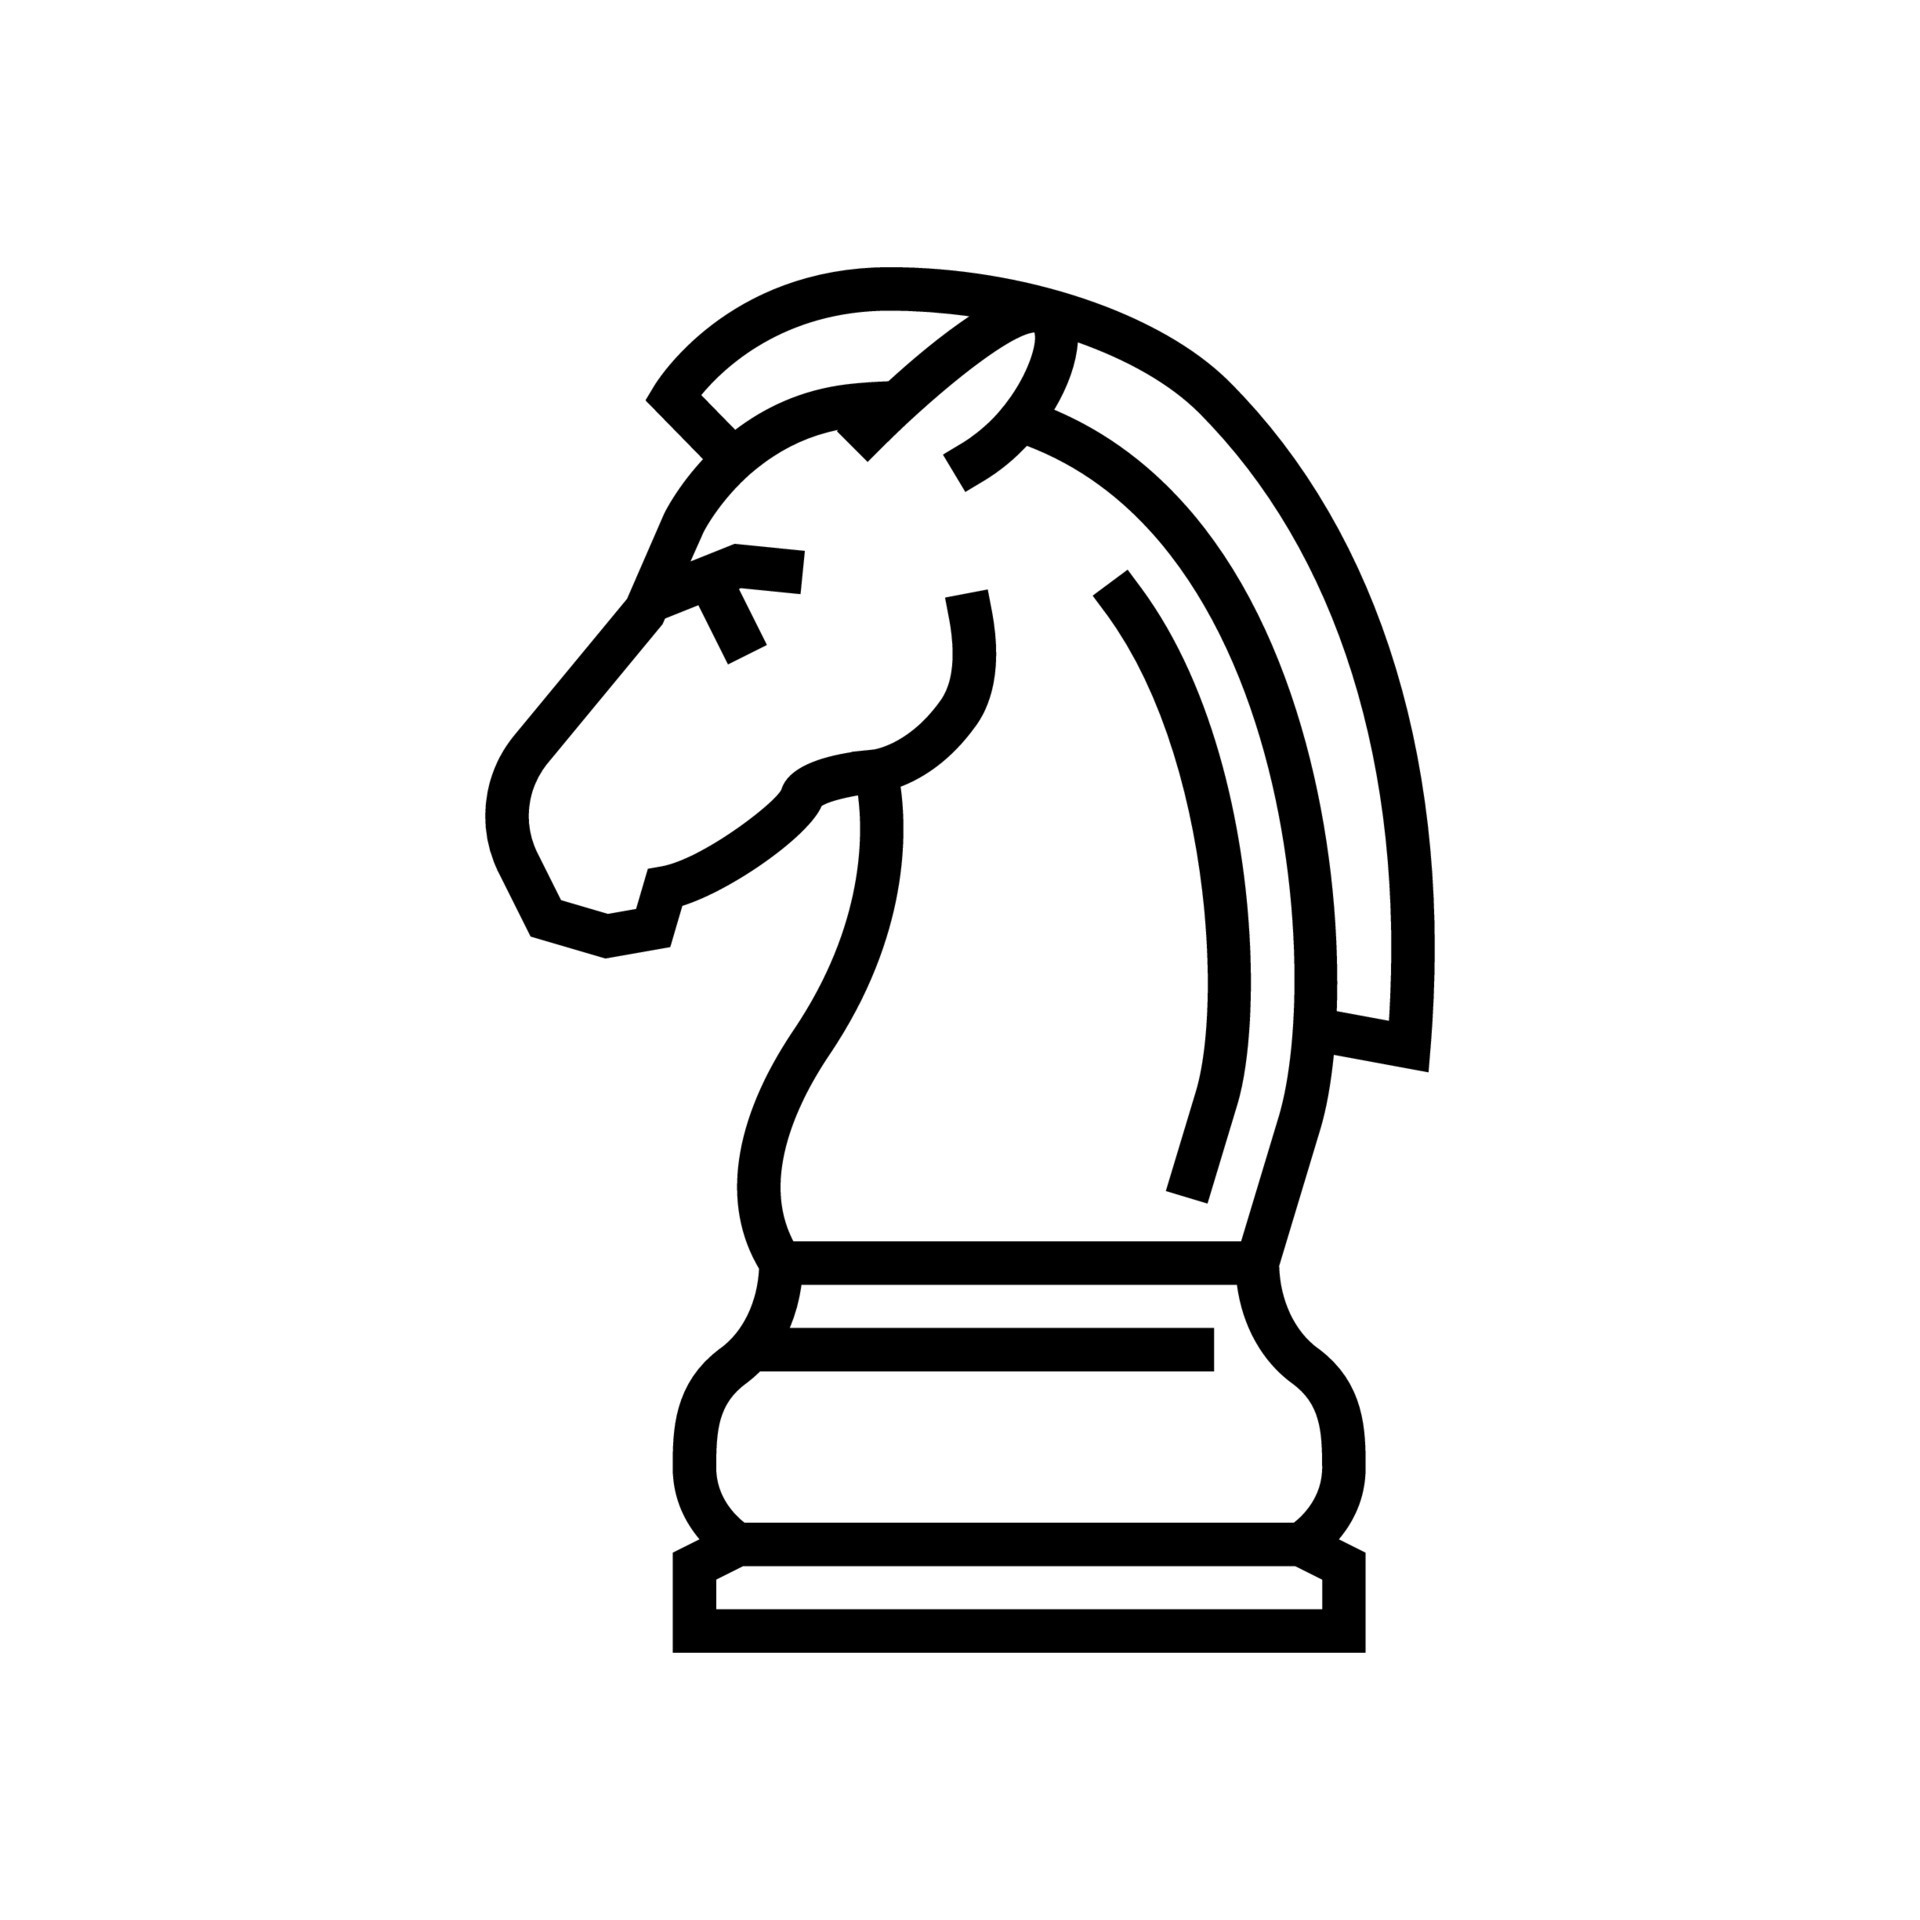 Desenho do cavalo em peça de xadrez. #desenho #draw #cavalo #horse #xa